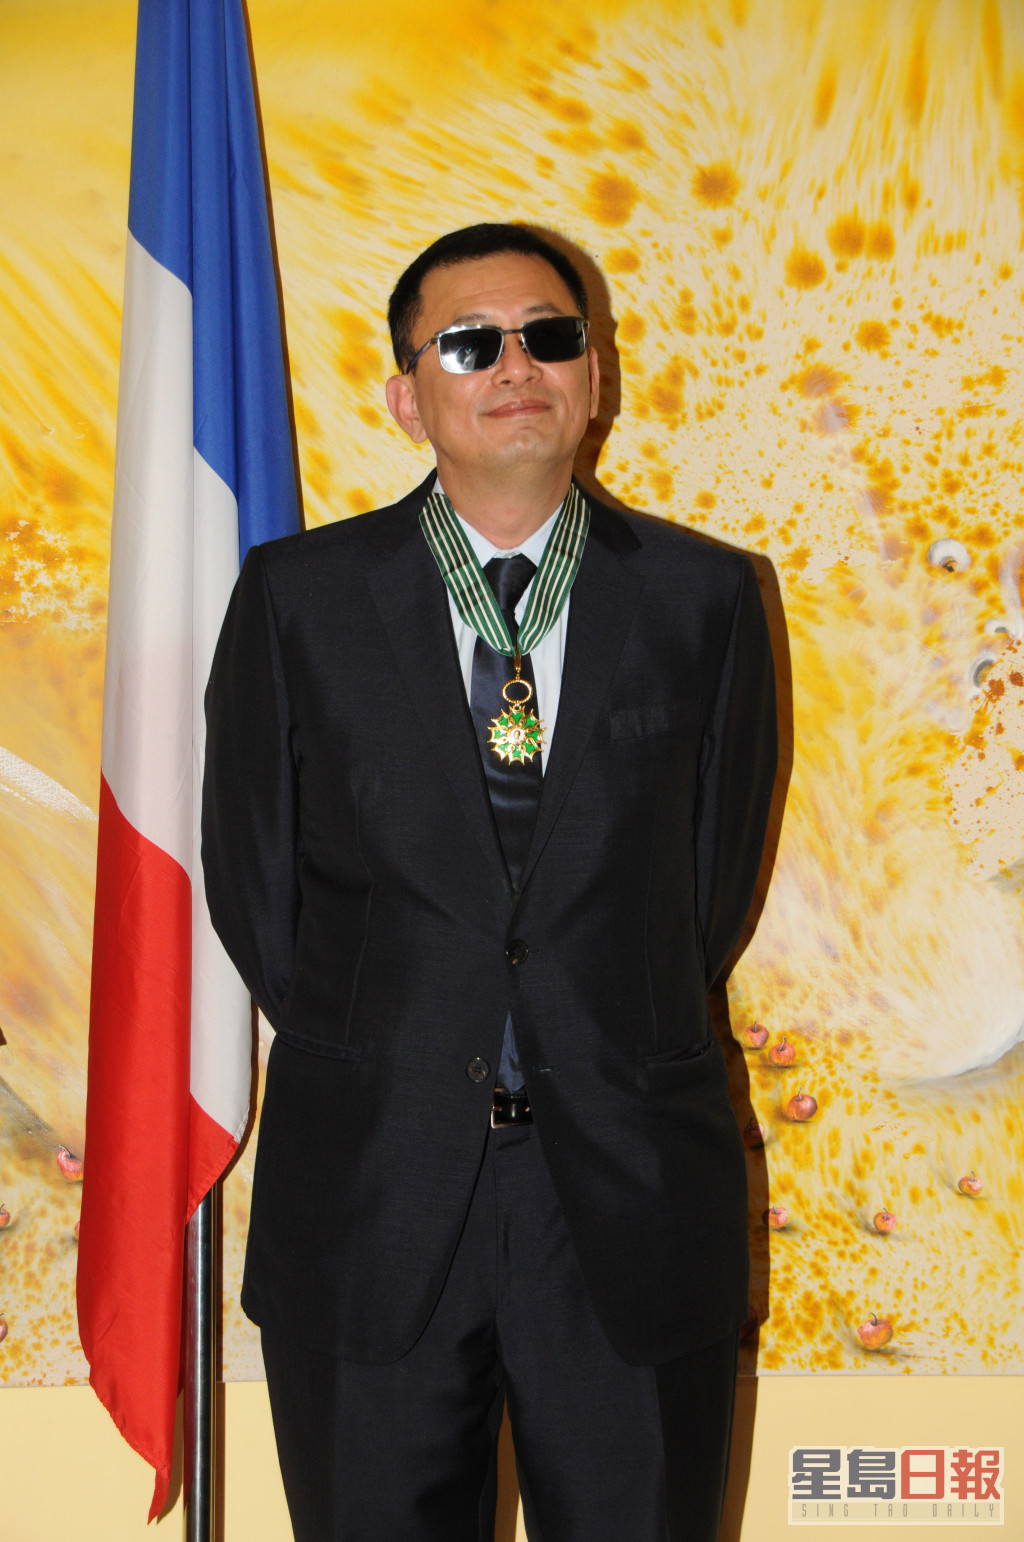 2013年王家衛獲頒授法國法蘭西藝術與文學勳章中，最高等級的「司令勳章」，當時同樣戴上黑超出席儀式。